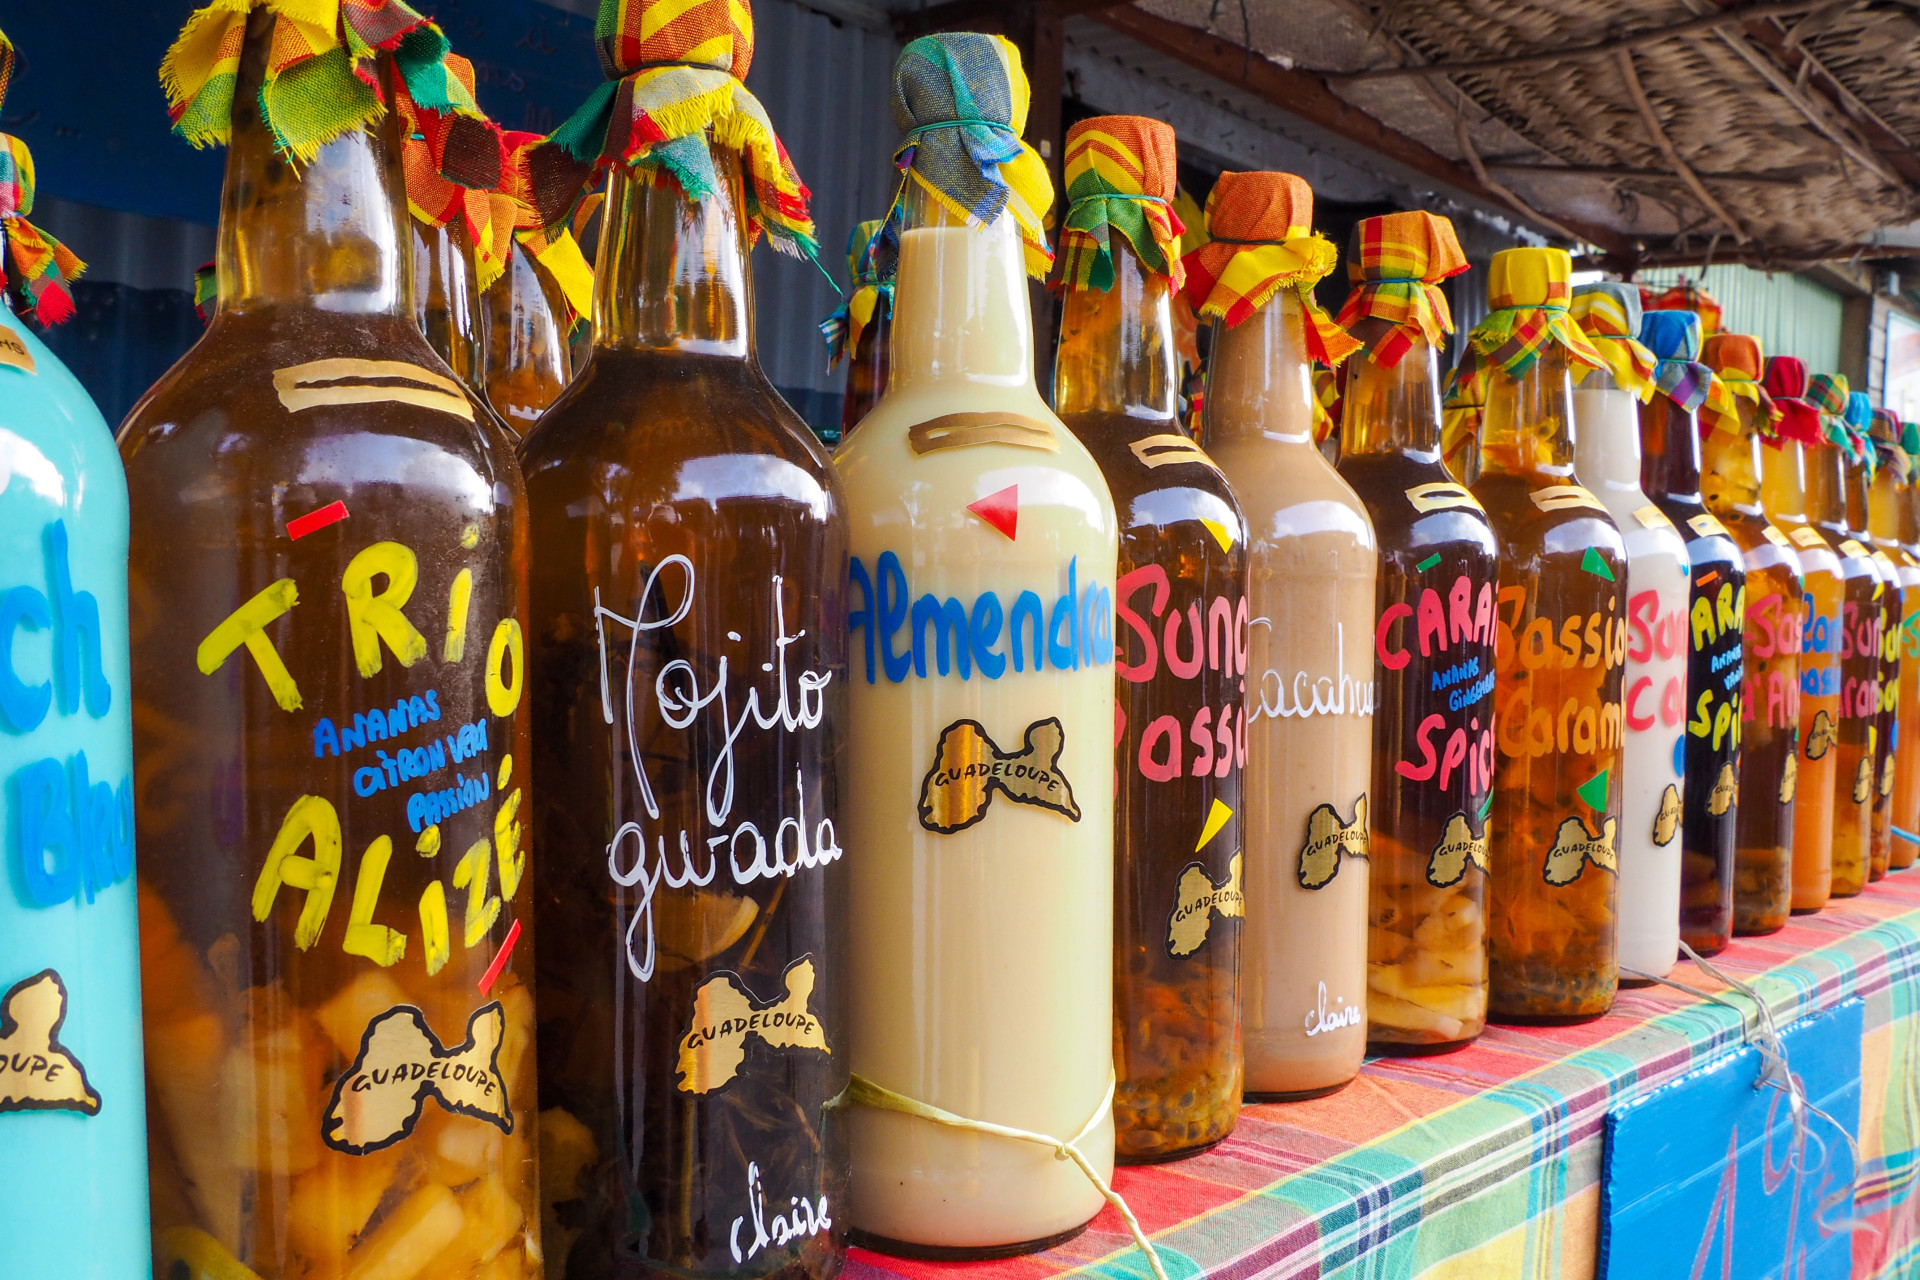 En Guadeloupe même les bouteilles de rhum arborent de jolies couleur.<p>Tu pourrais aussi aimer:<a href="https://www.starsinsider.com/n/215818?utm_source=msn.com&utm_medium=display&utm_campaign=referral_description&utm_content=174085v2"> Savez-vous qui se cache derrière ces noms de rue? </a></p>